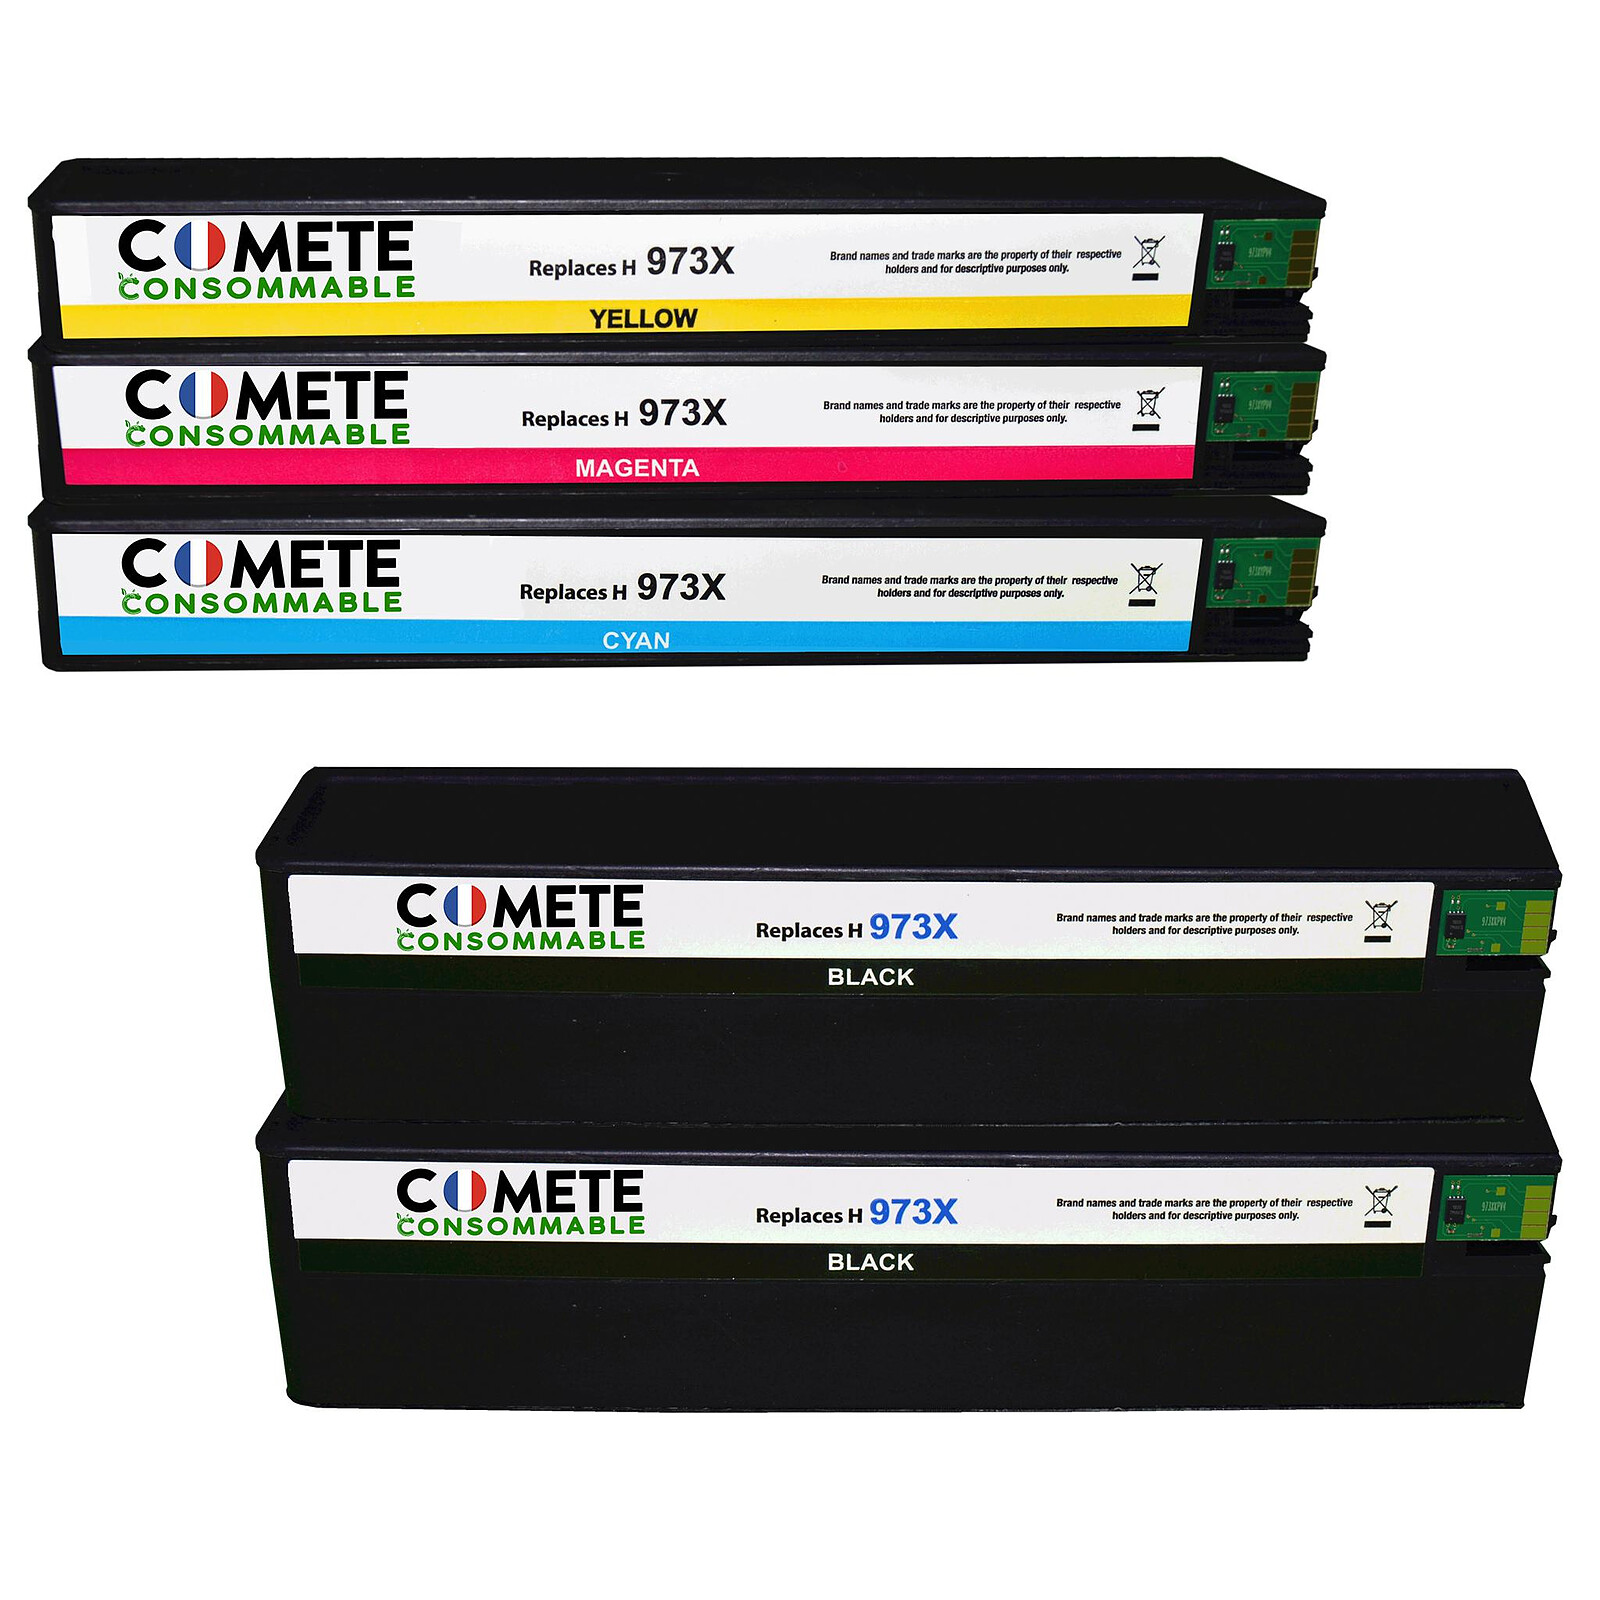 COMETE - 604XL - 5 Cartouches Compatibles avec Epson 604 ou 604 XL -  Couleur (3) - Noir (2) - Marque française - Cartouche imprimante - LDLC